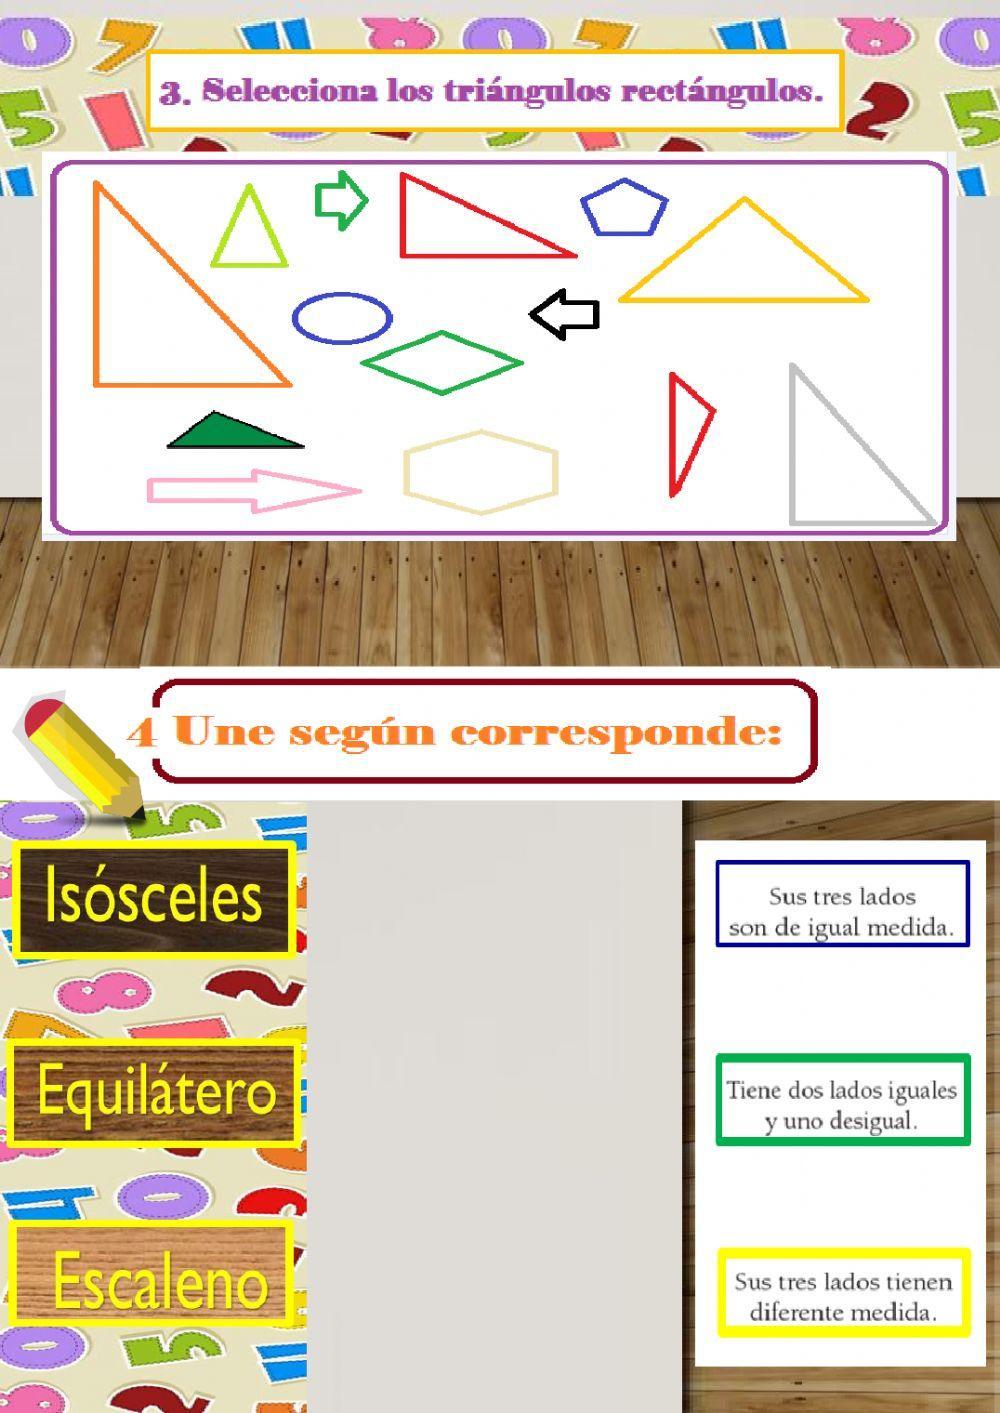 Clasificación de los triángulos.